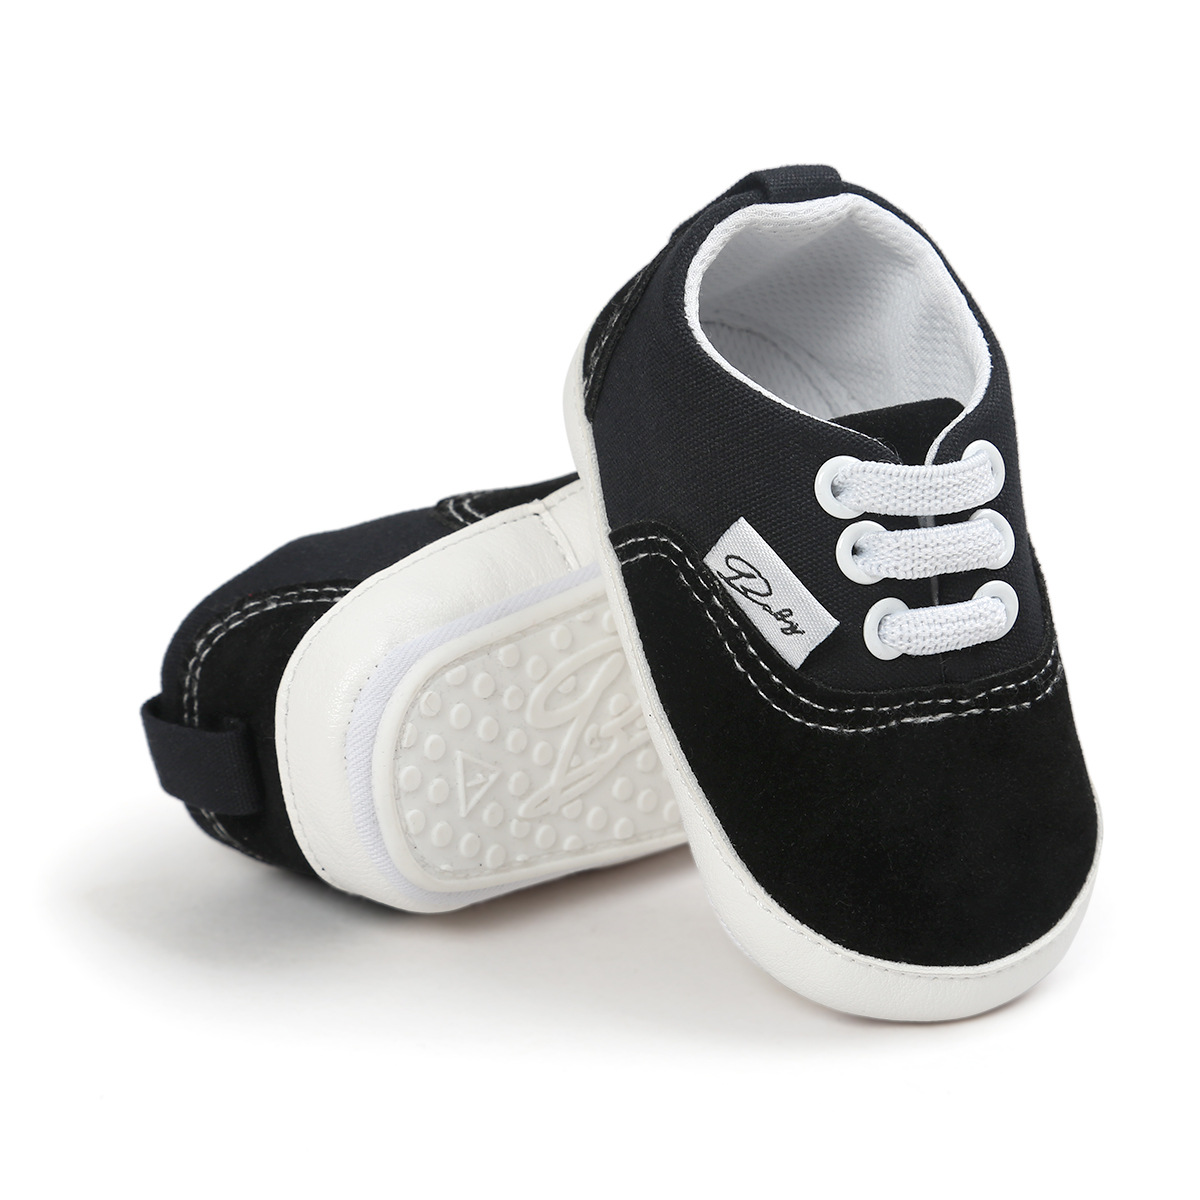 Chaussures bébé en coton - Ref 3436710 Image 34